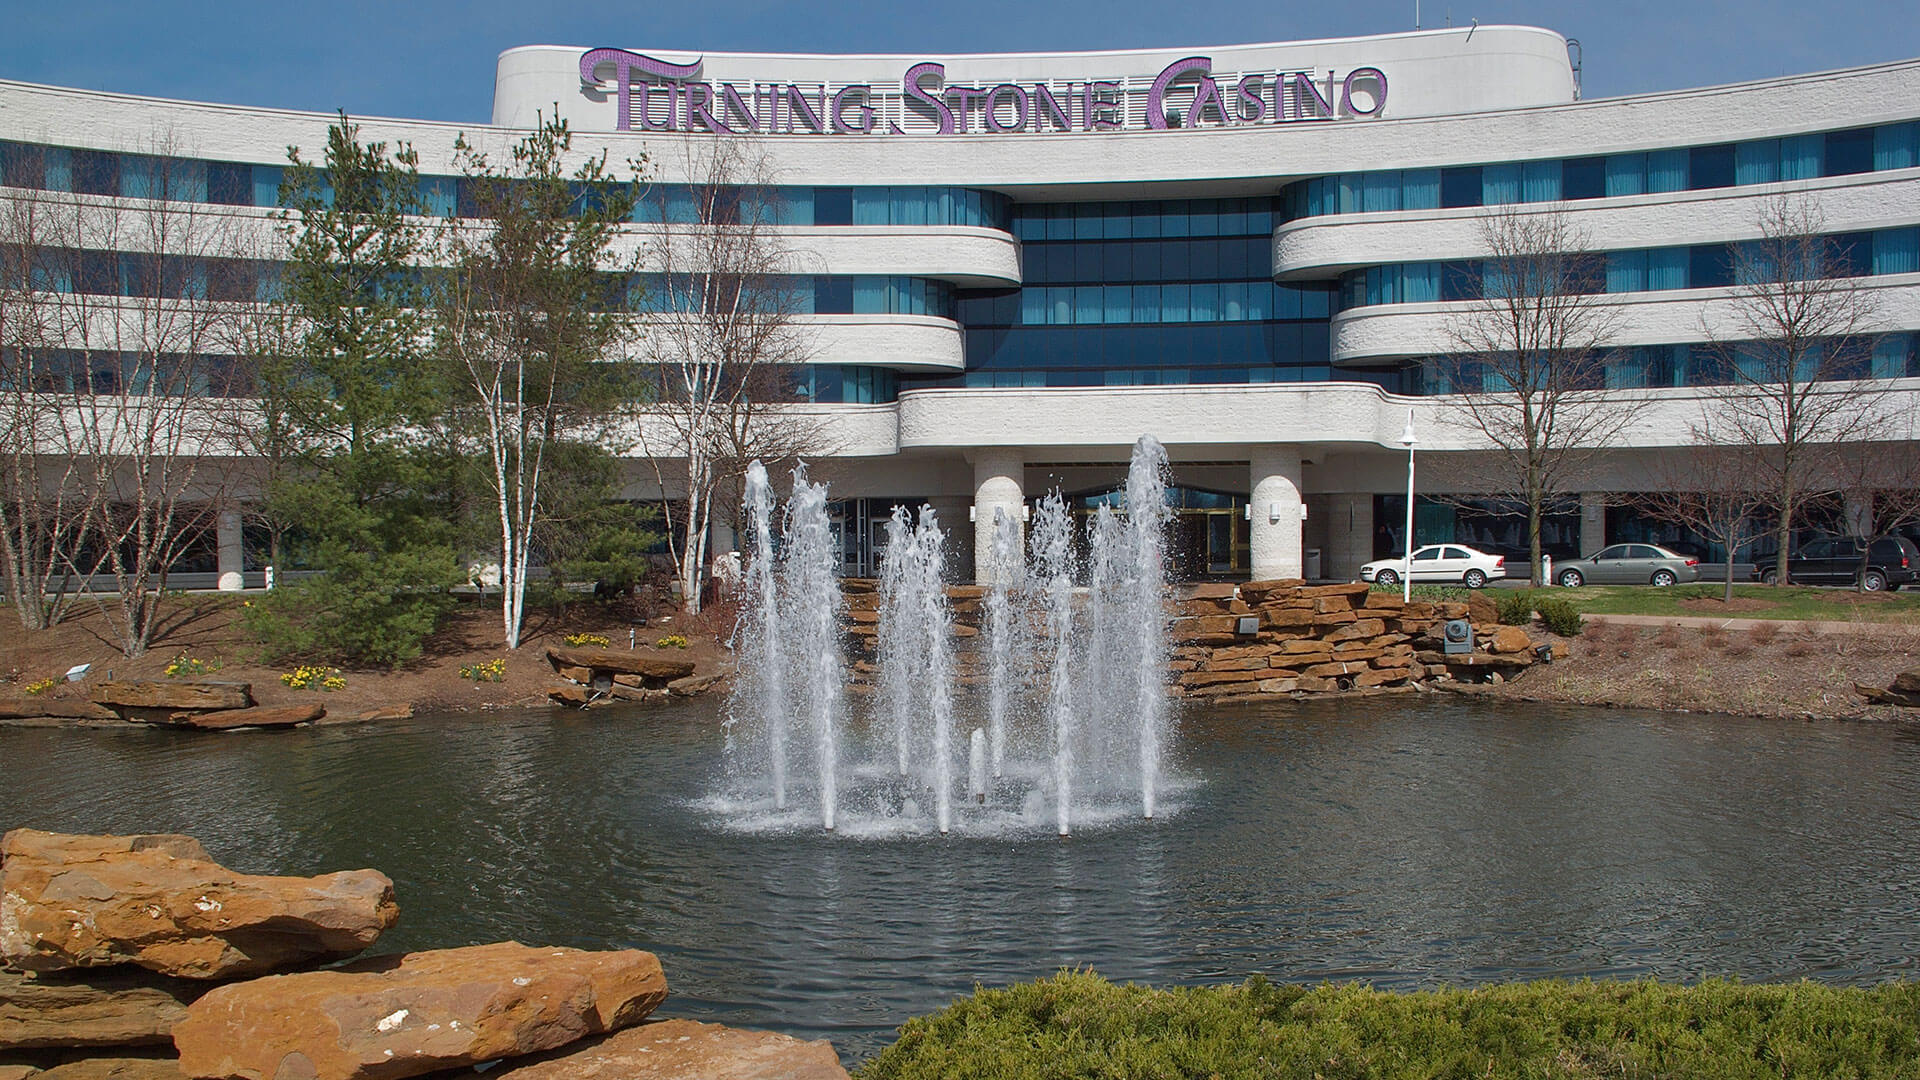 turning stone resort and casino hotel